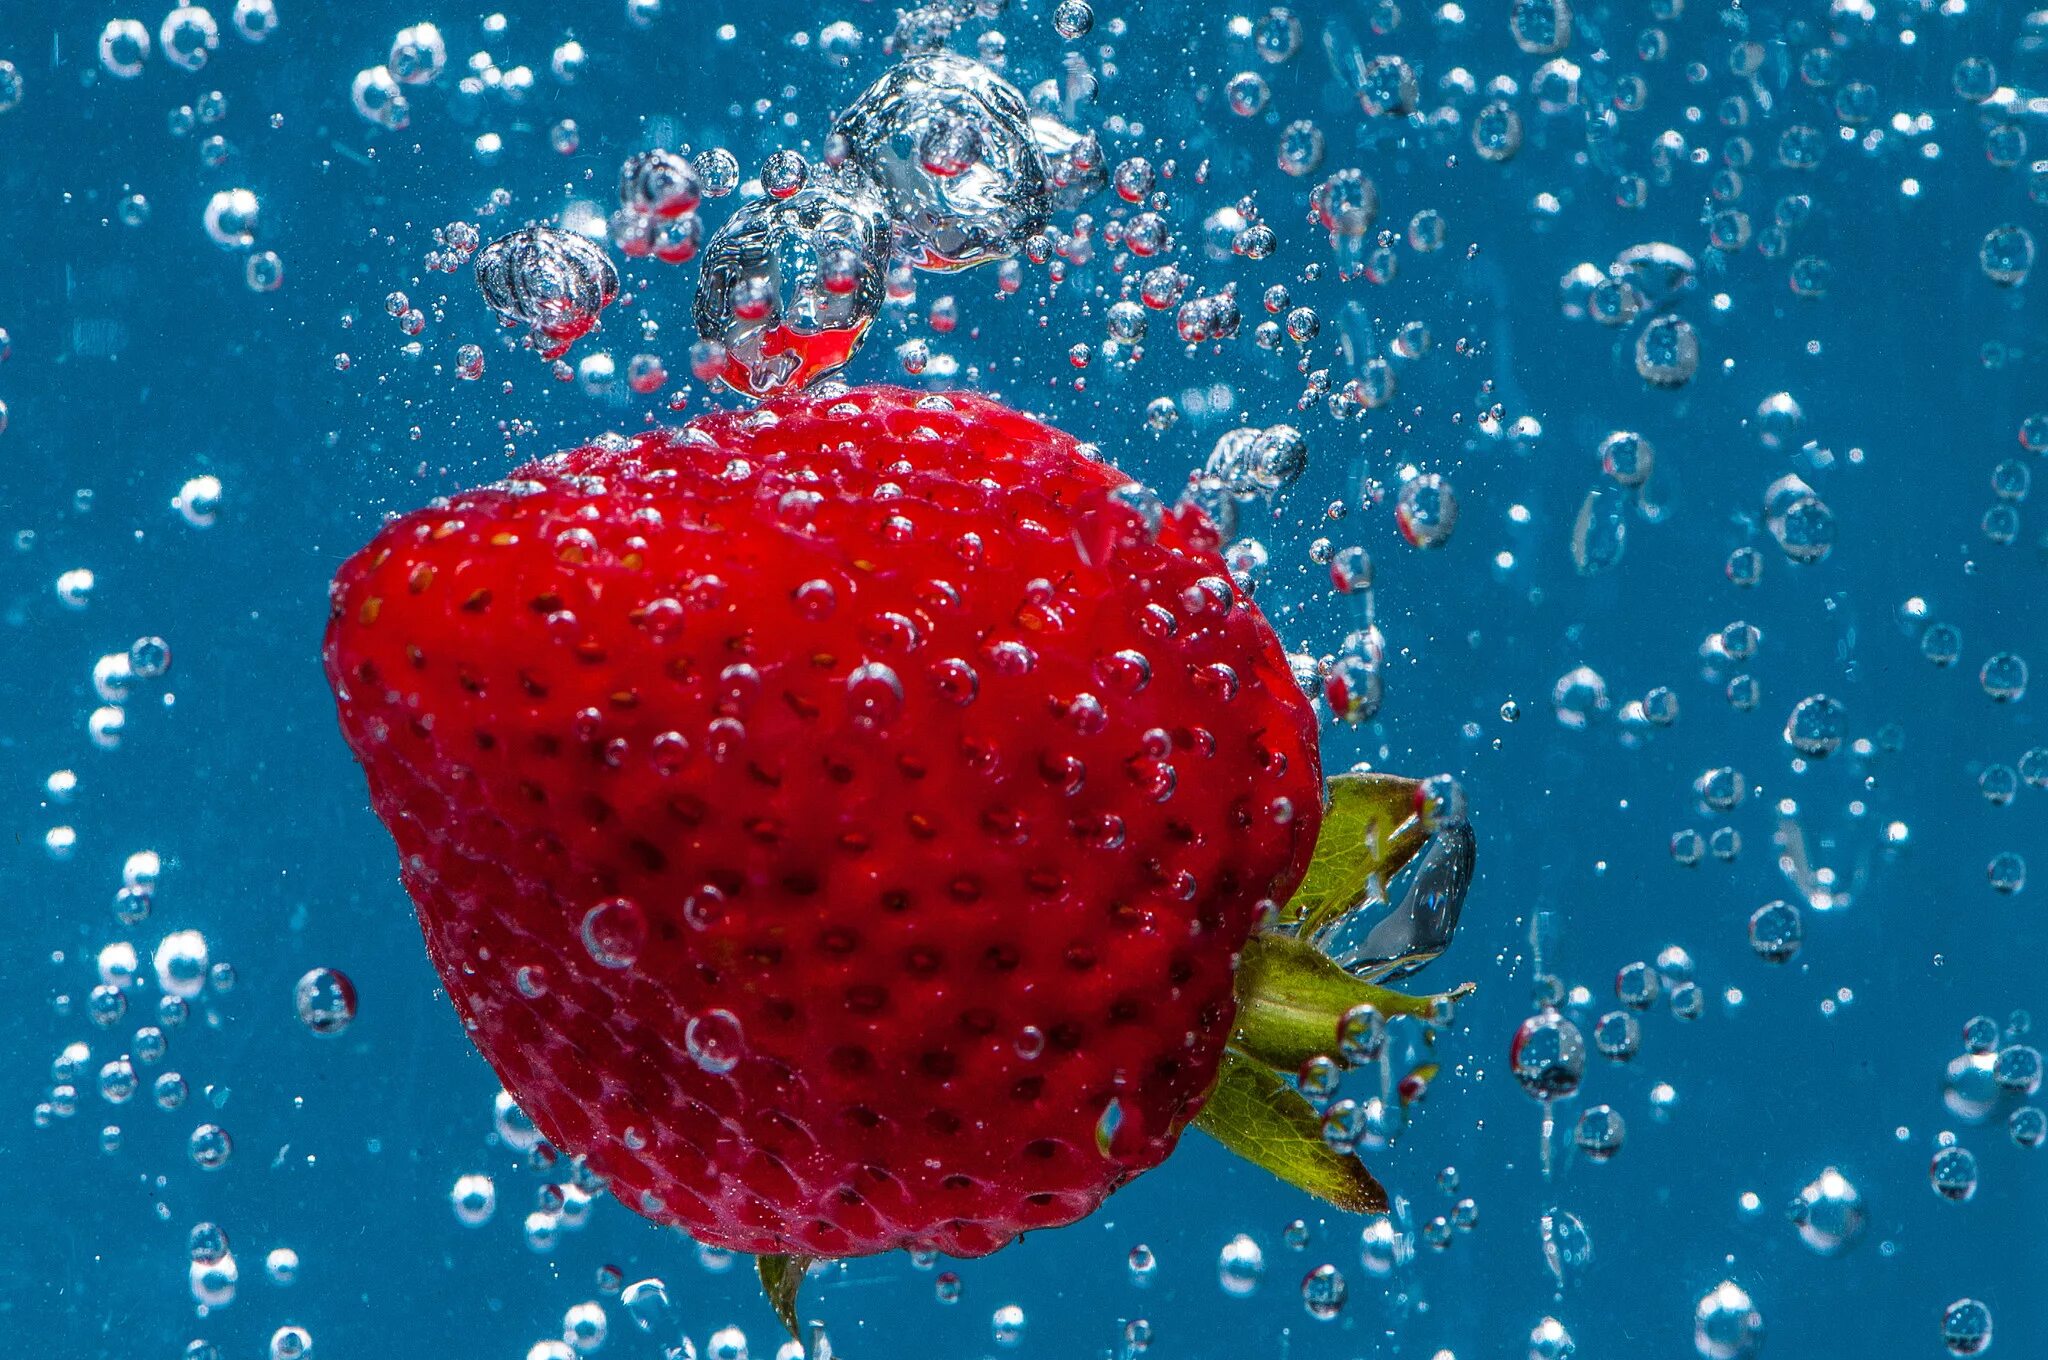 Заставка на телефон фрукты. Сочная клубника. Фрукты в воде. Красивые ягоды. Сочные фрукты.